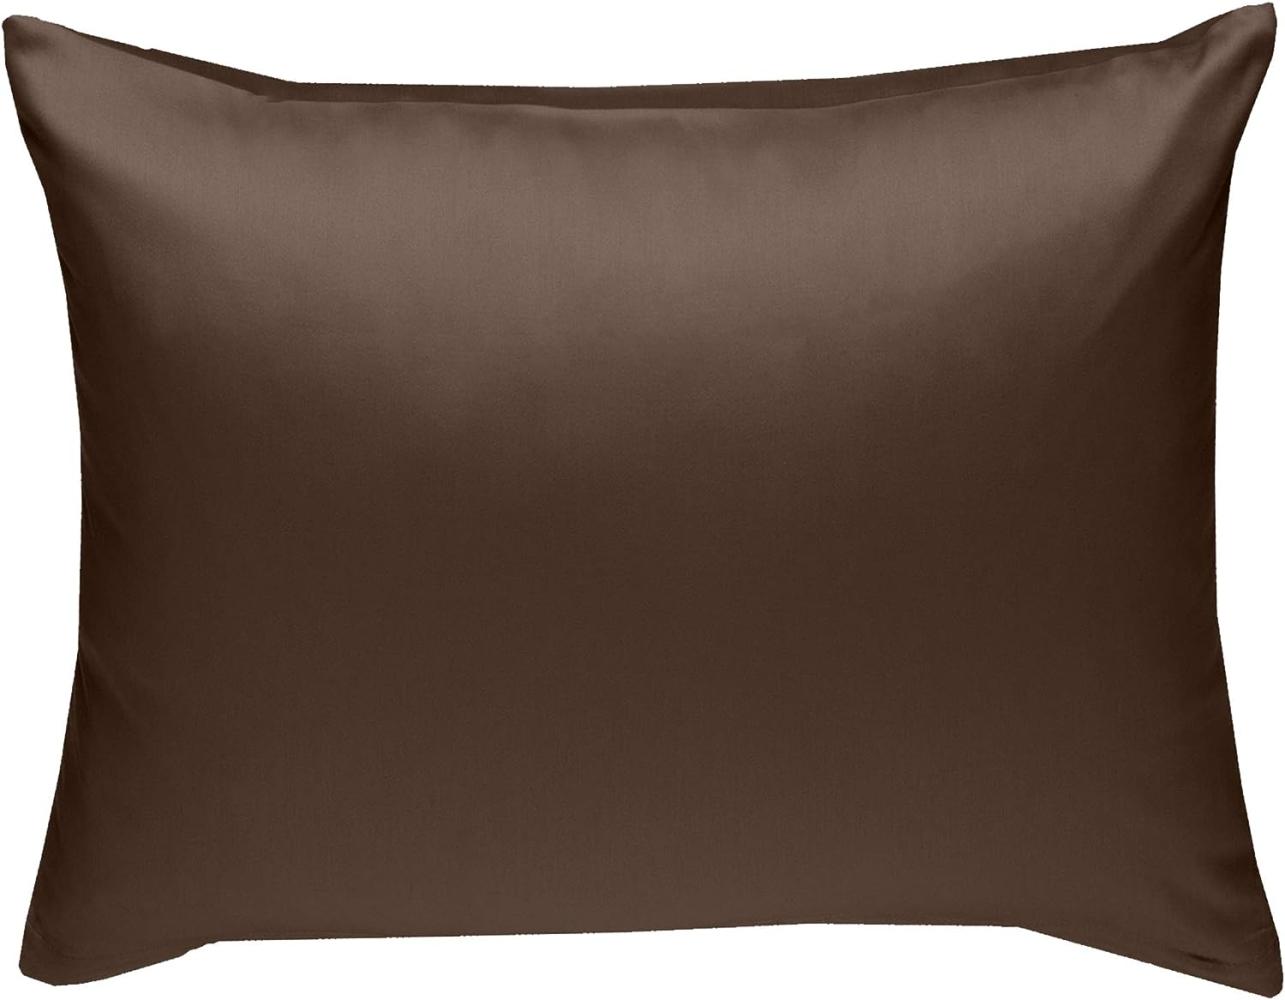 Bettwaesche-mit-Stil Mako-Satin / Baumwollsatin Bettwäsche uni / einfarbig dunkelbraun Kissenbezug 70x90 cm Bild 1